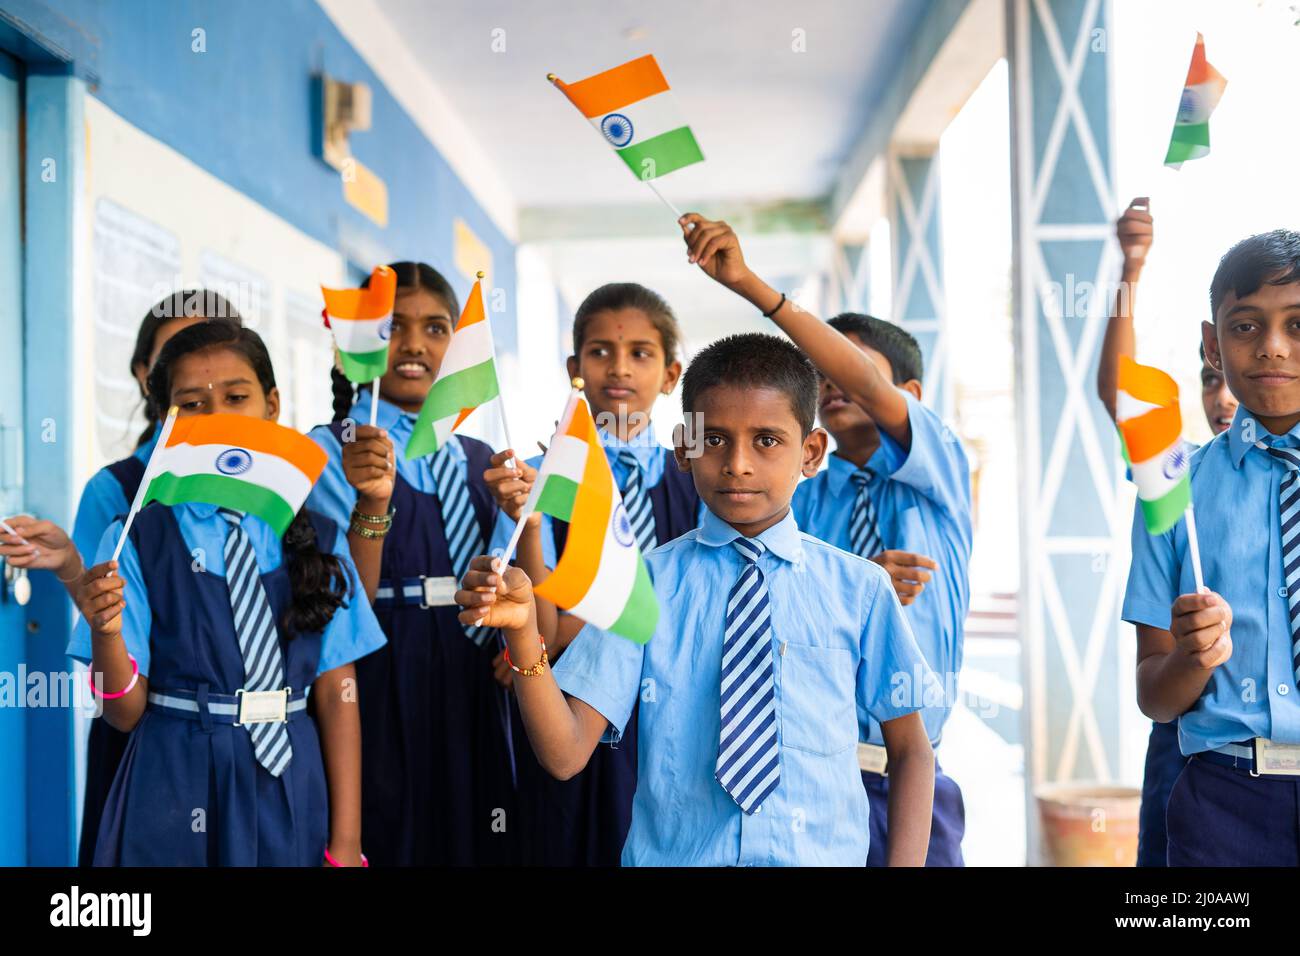 Glückliche Kinder in Uniform winken indische Flagge durch die Kamera auf Schulkorridor - Konzept der Unabhängigkeit oder republic Day Feier, Patriotismus und Stockfoto